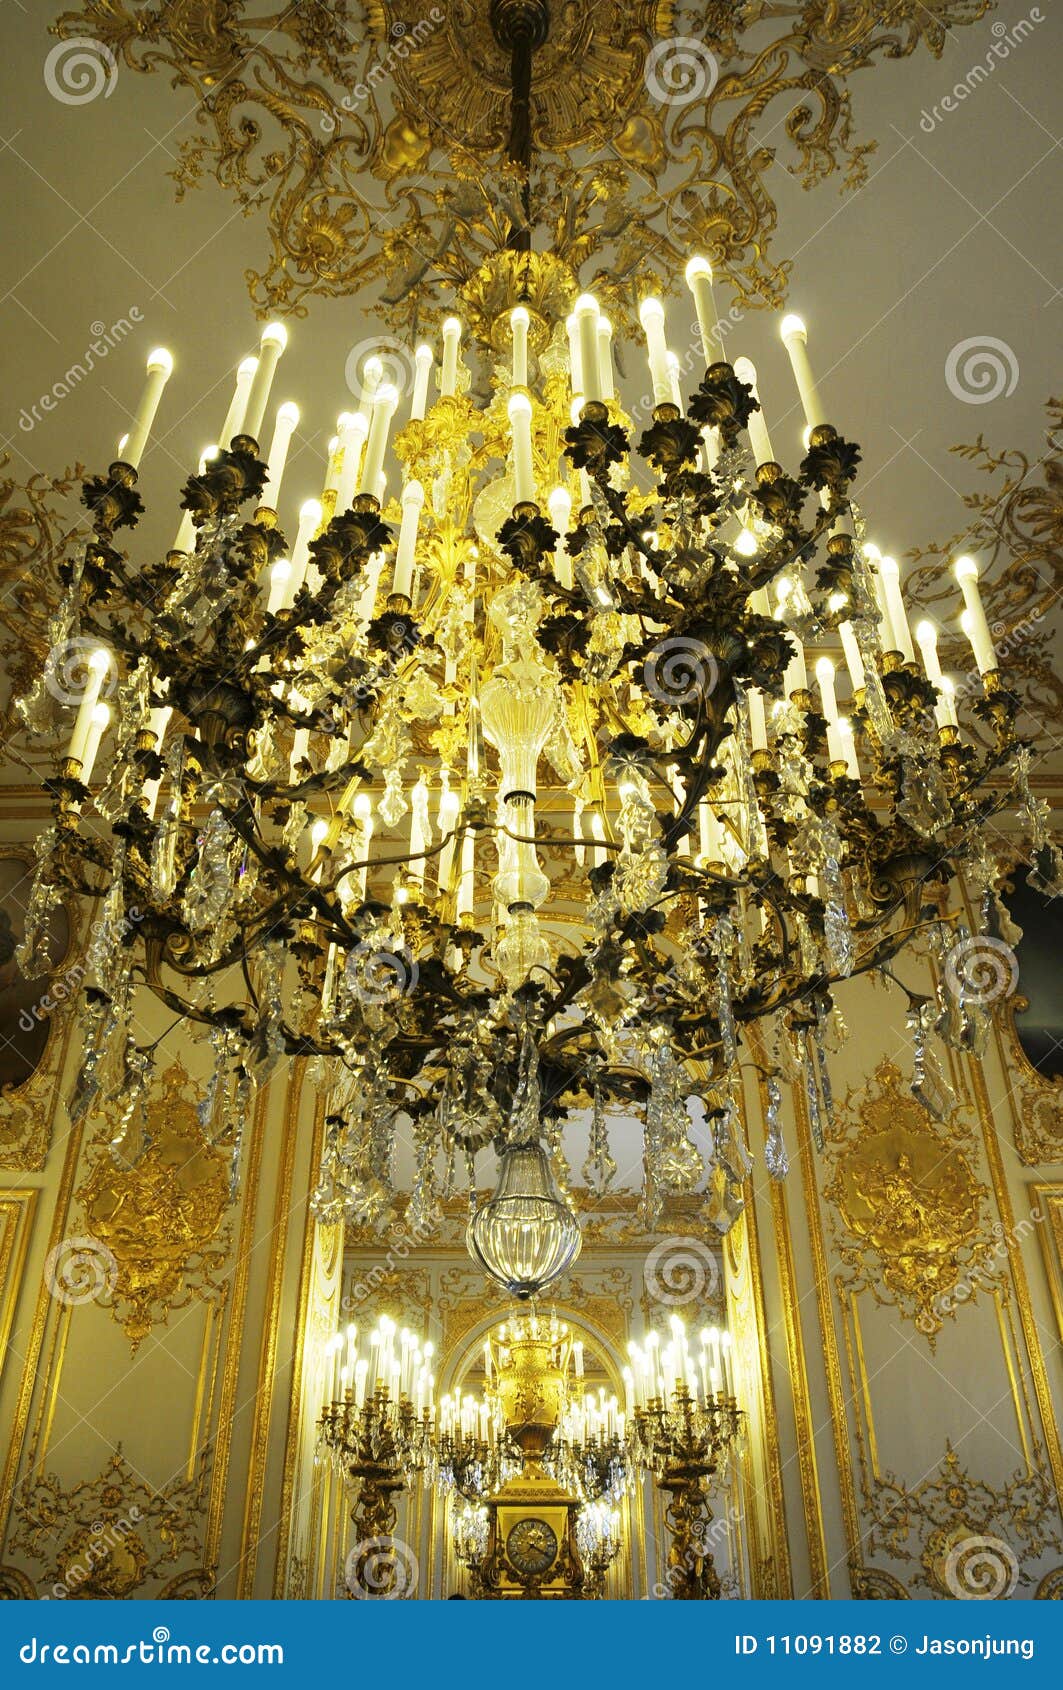 splendid chandelier in royal palace